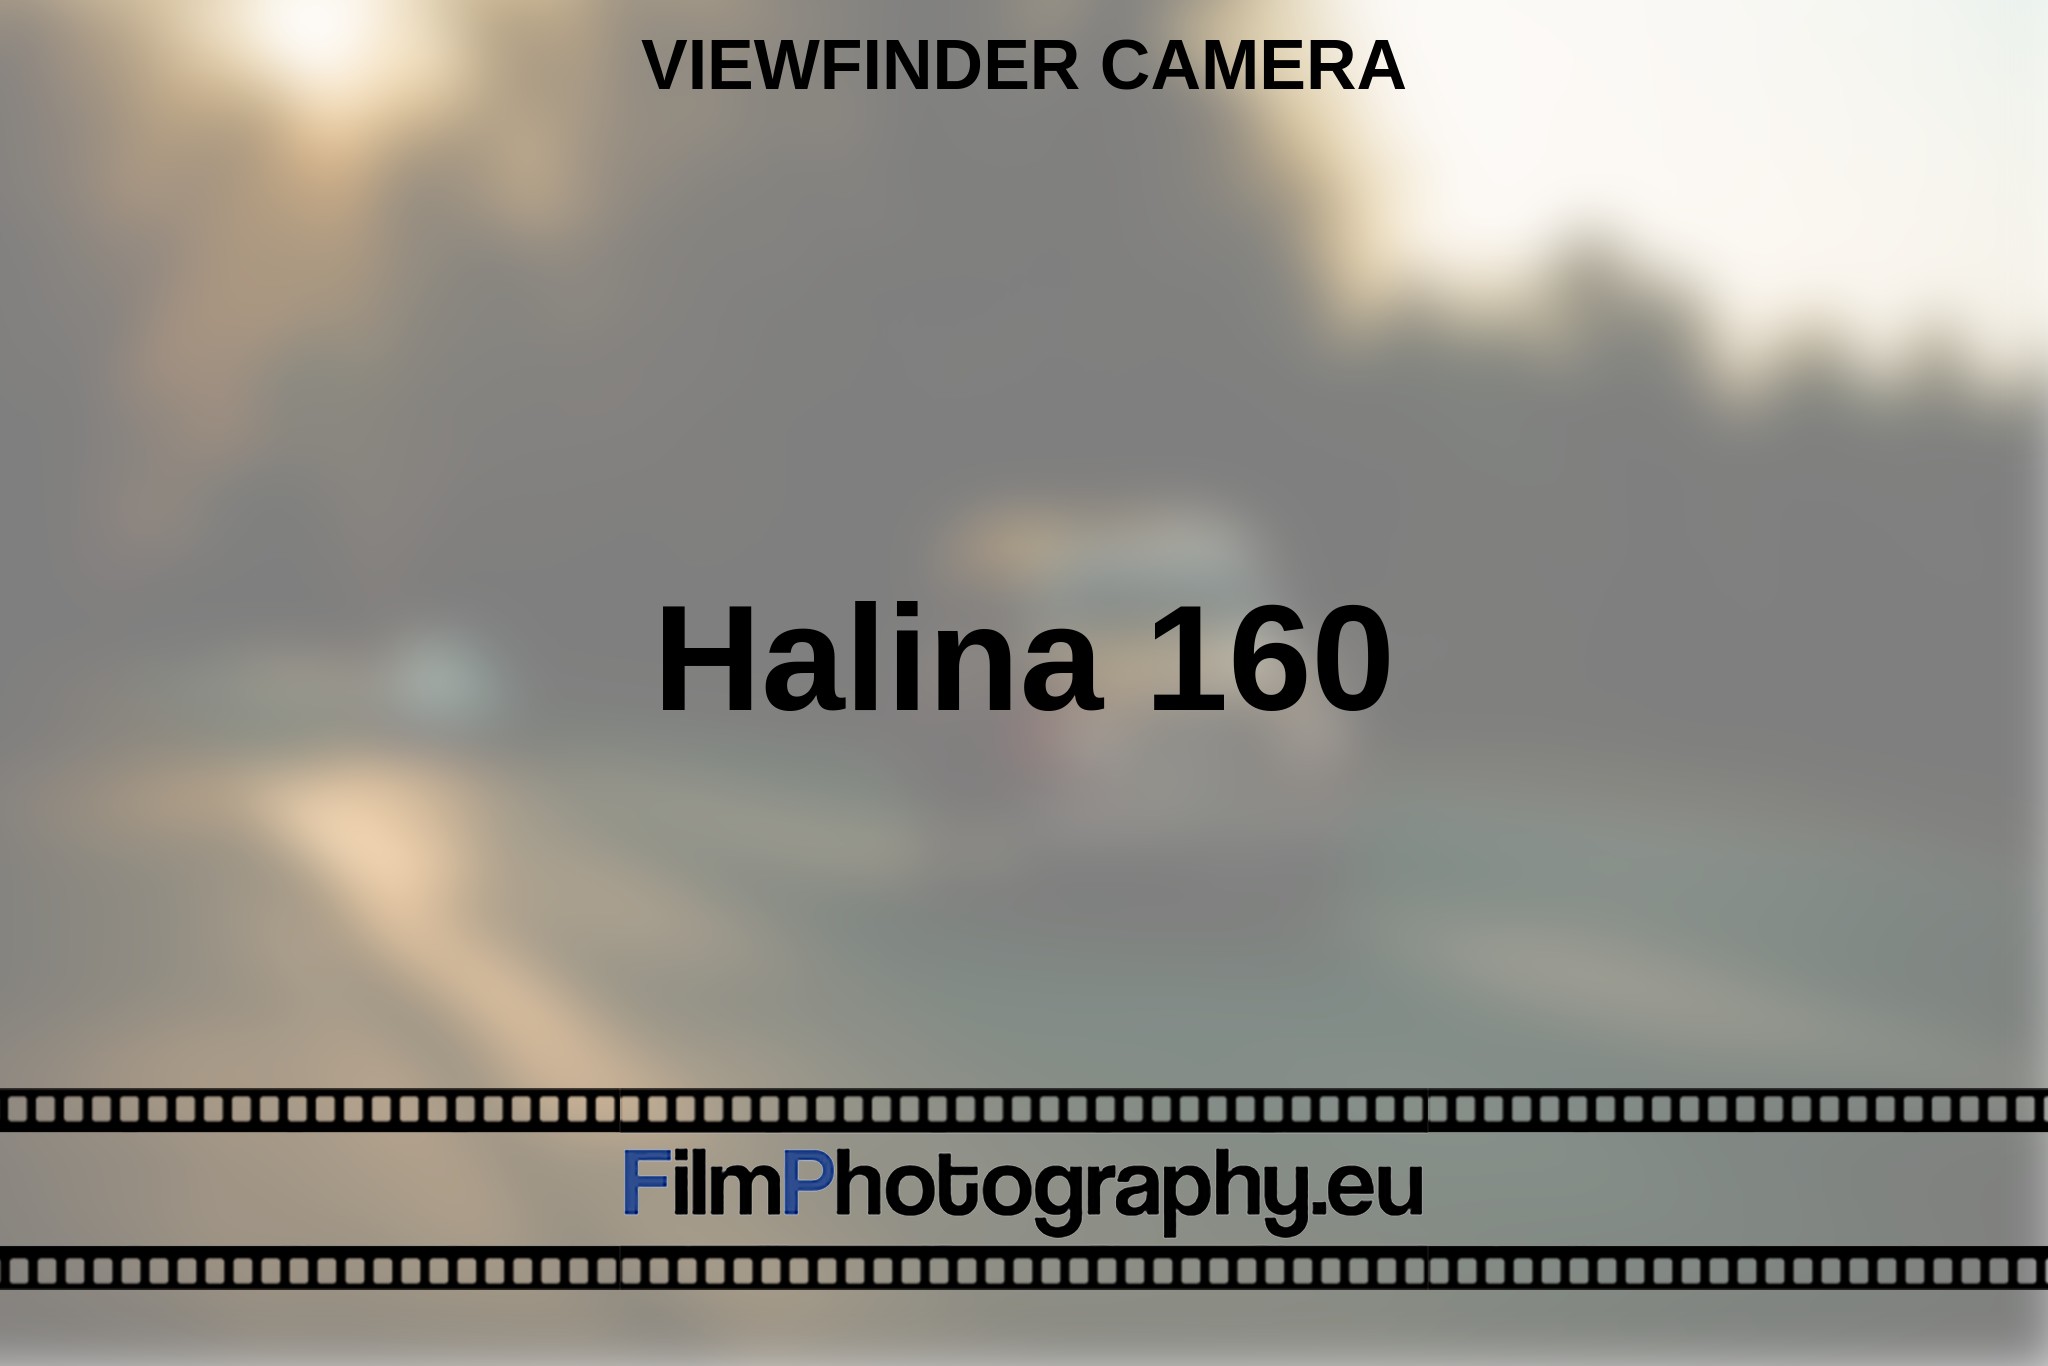 halina-160-viewfinder-camera-en-bnv.jpg